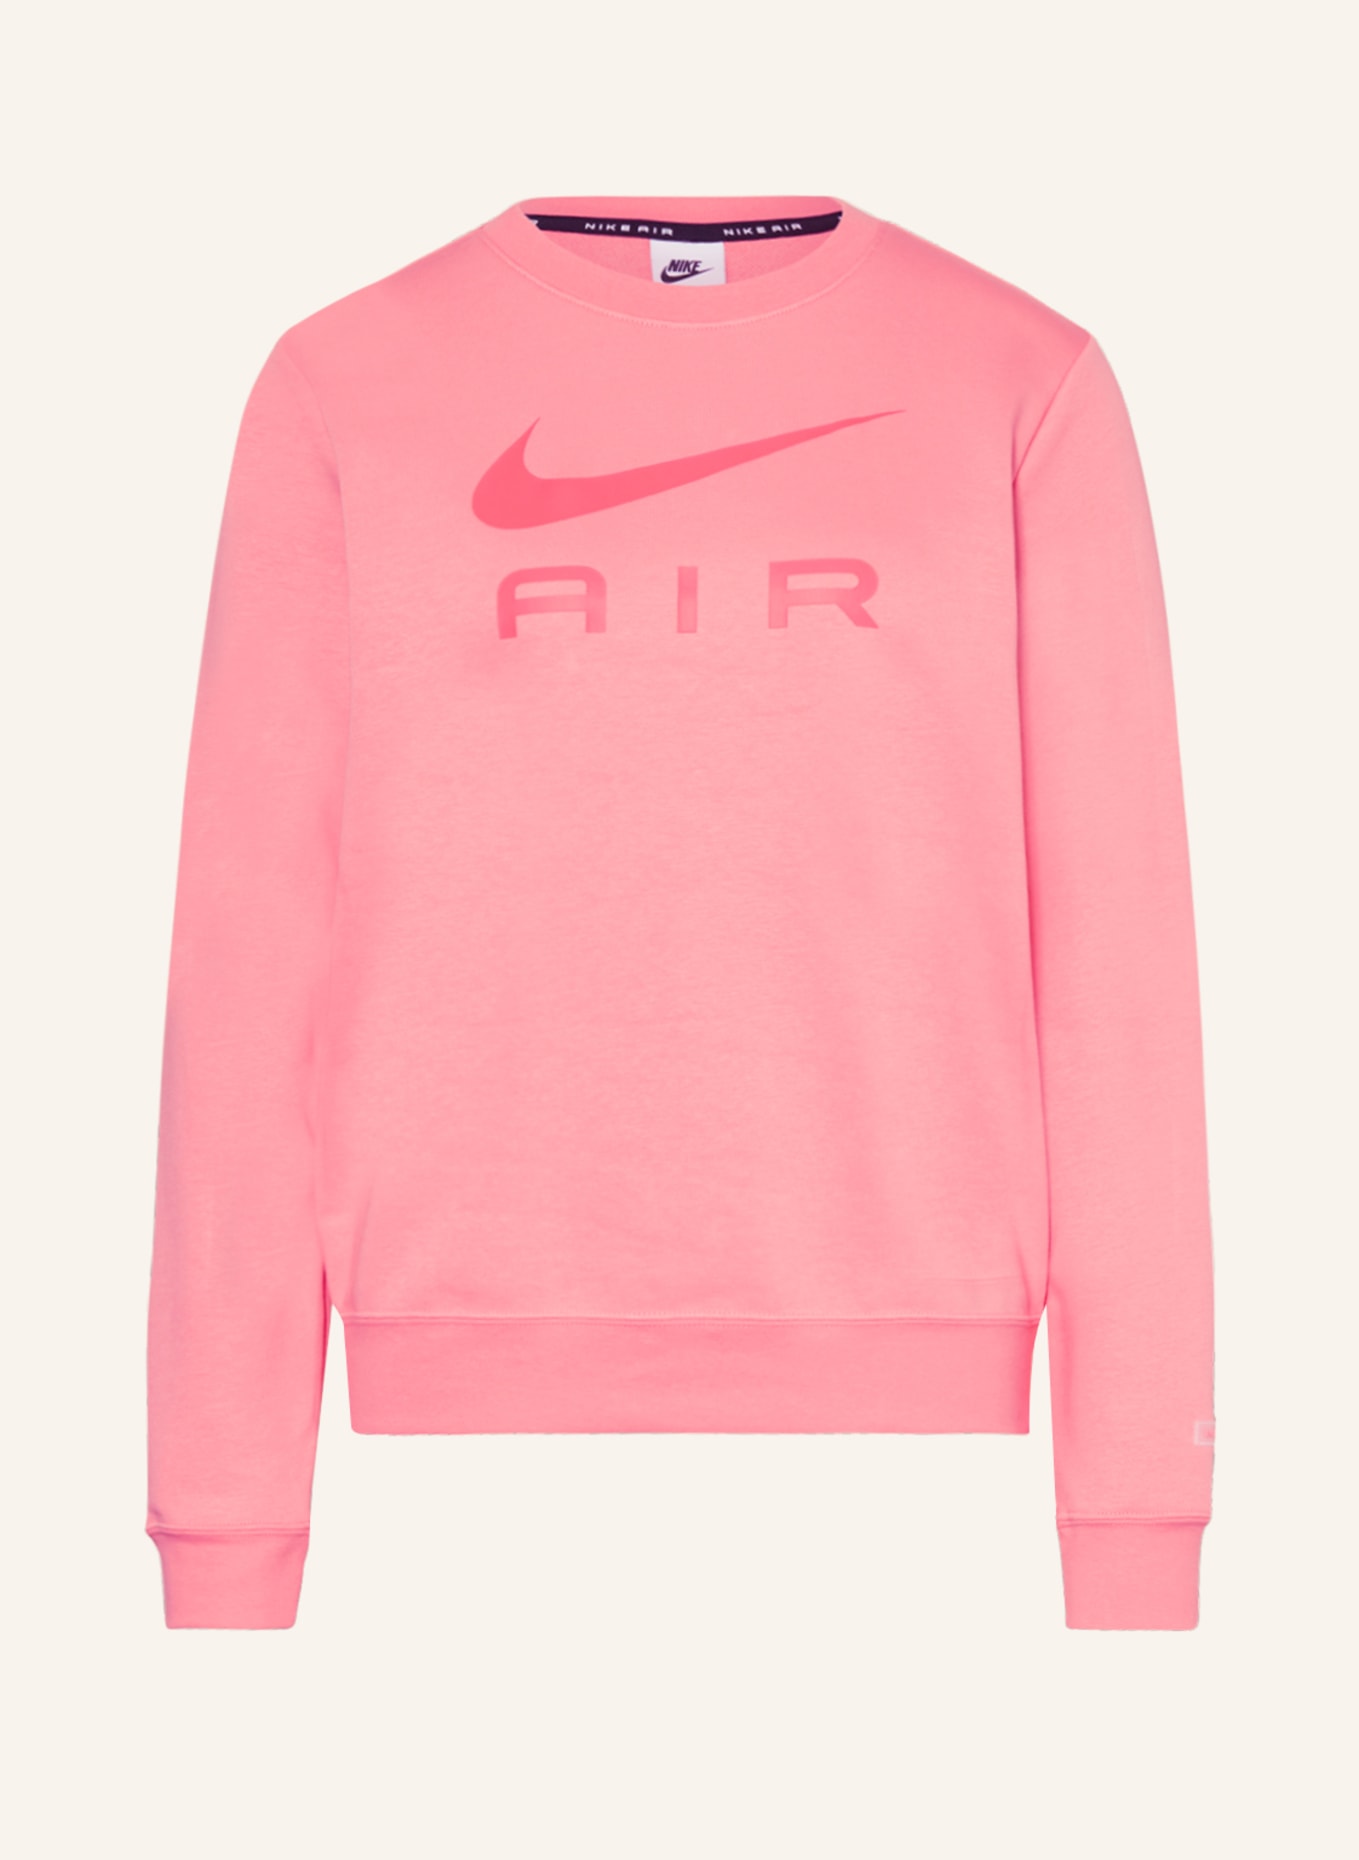 Nike Sweatshirt, Color: PINK (Image 1)